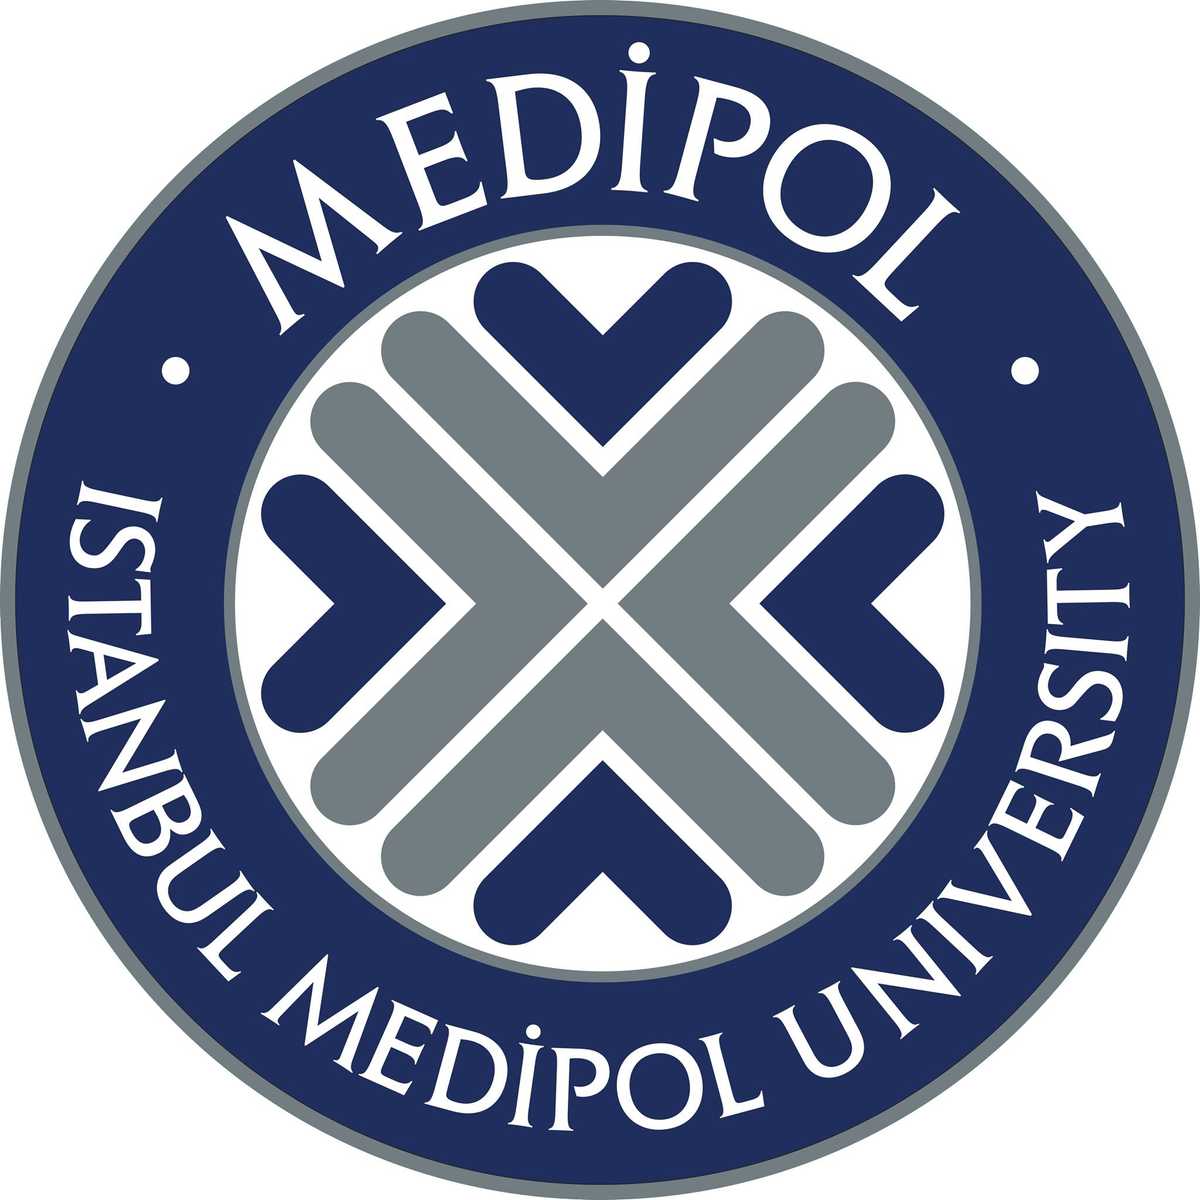 Choisissez Medipol University pour une éducation de qualité en Turquie